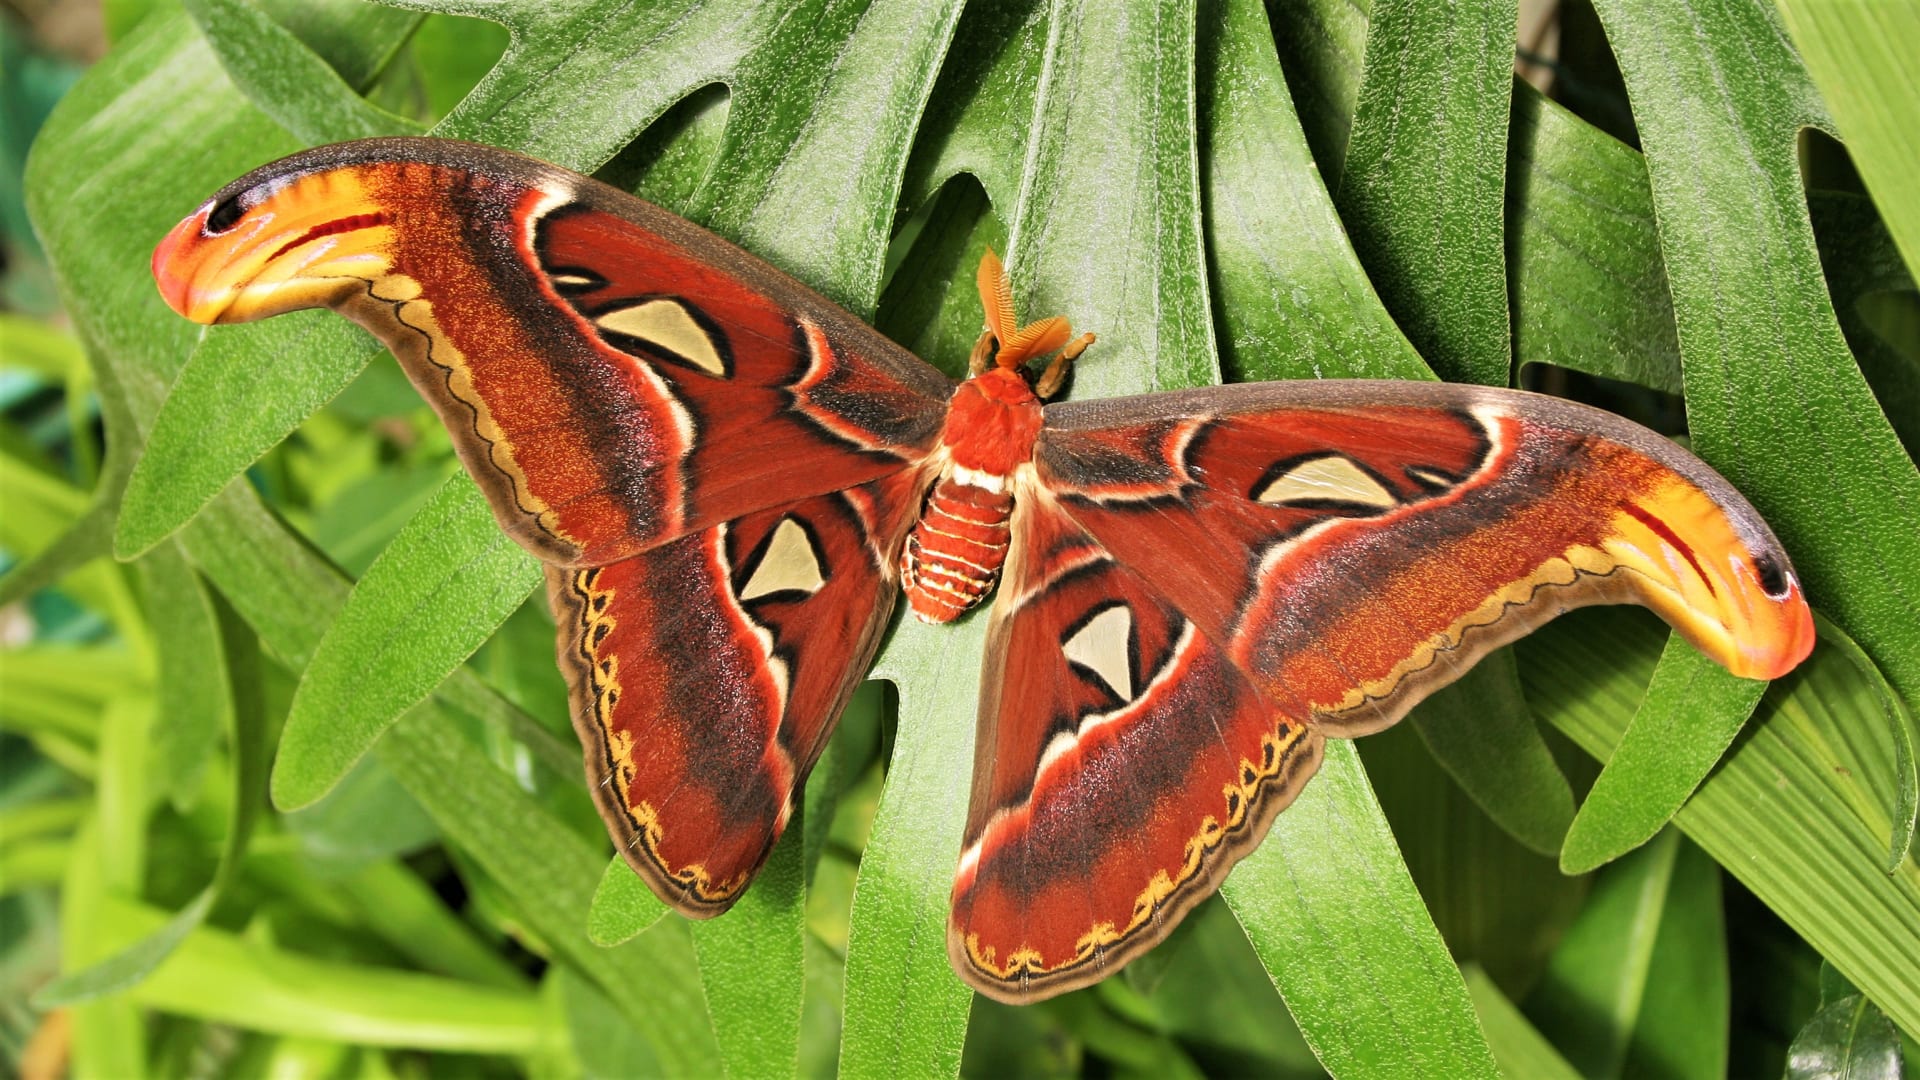 Výstava tropických motýlů ve skleníku Fata Morgana: motýl s největší plochou křídel na světě, martináč Attacus atlas